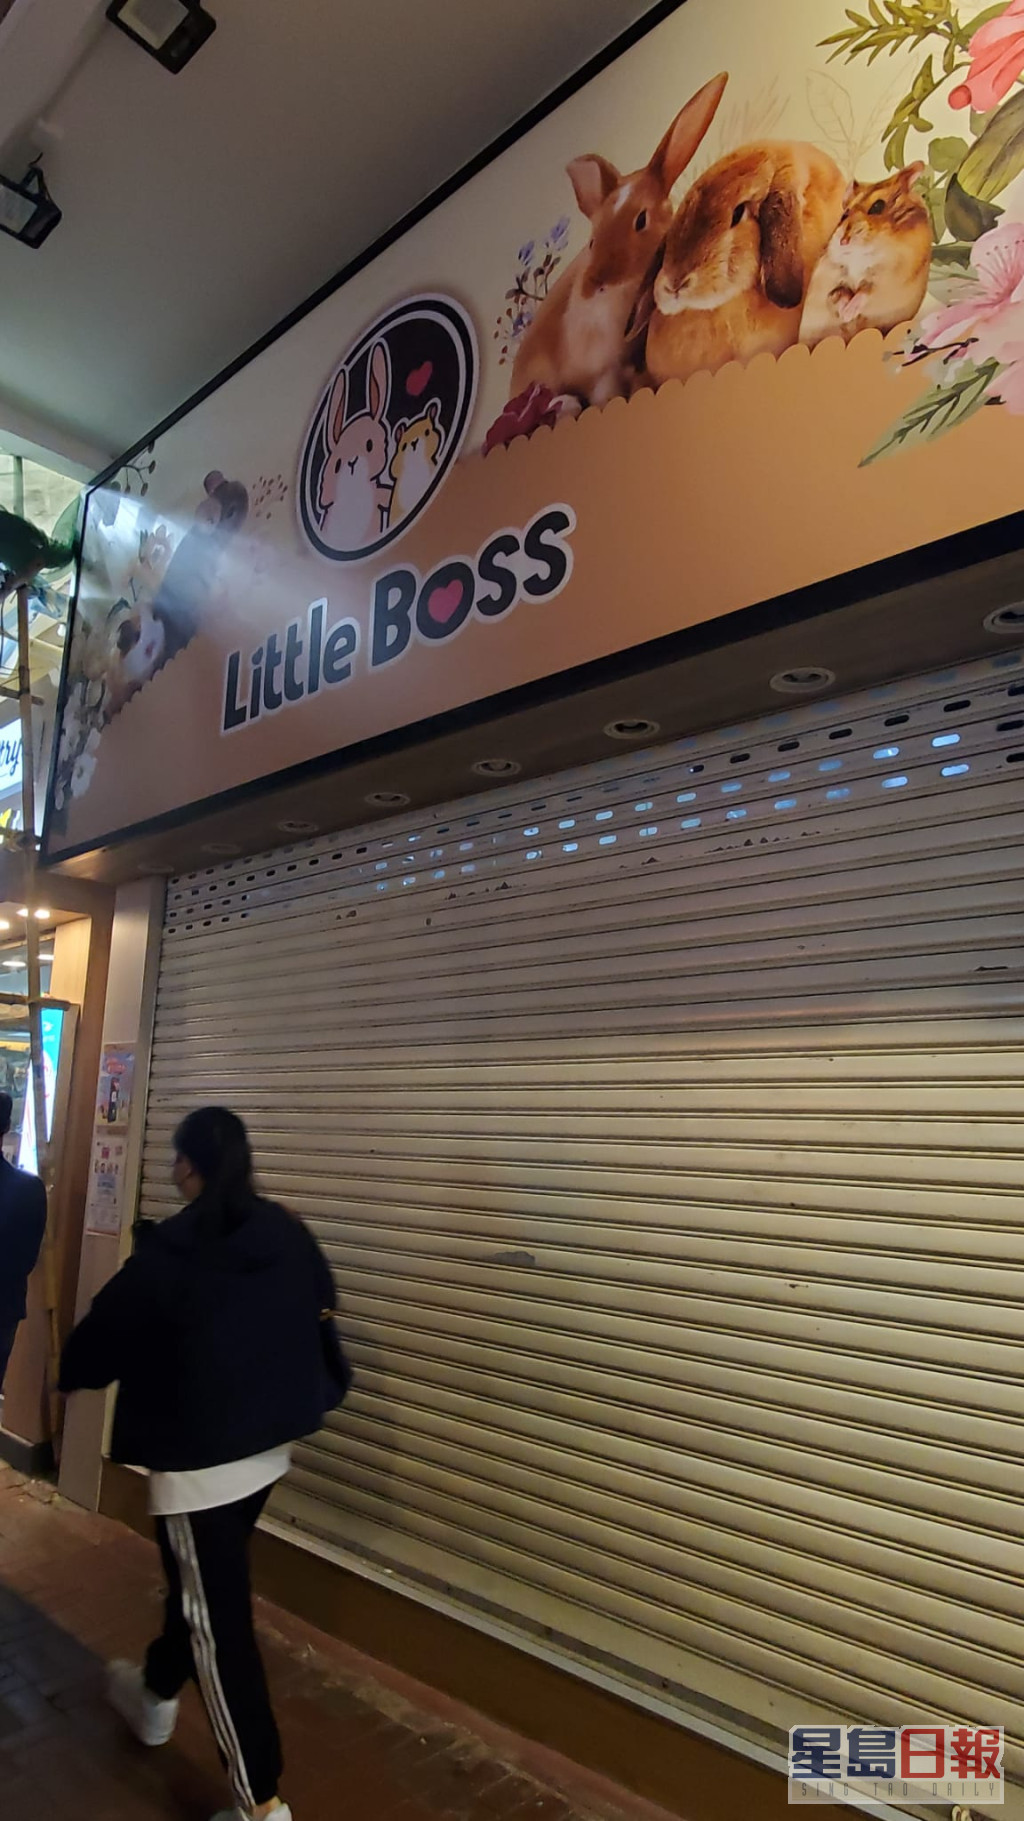 旺角通菜街Little Boss分店已经停业。